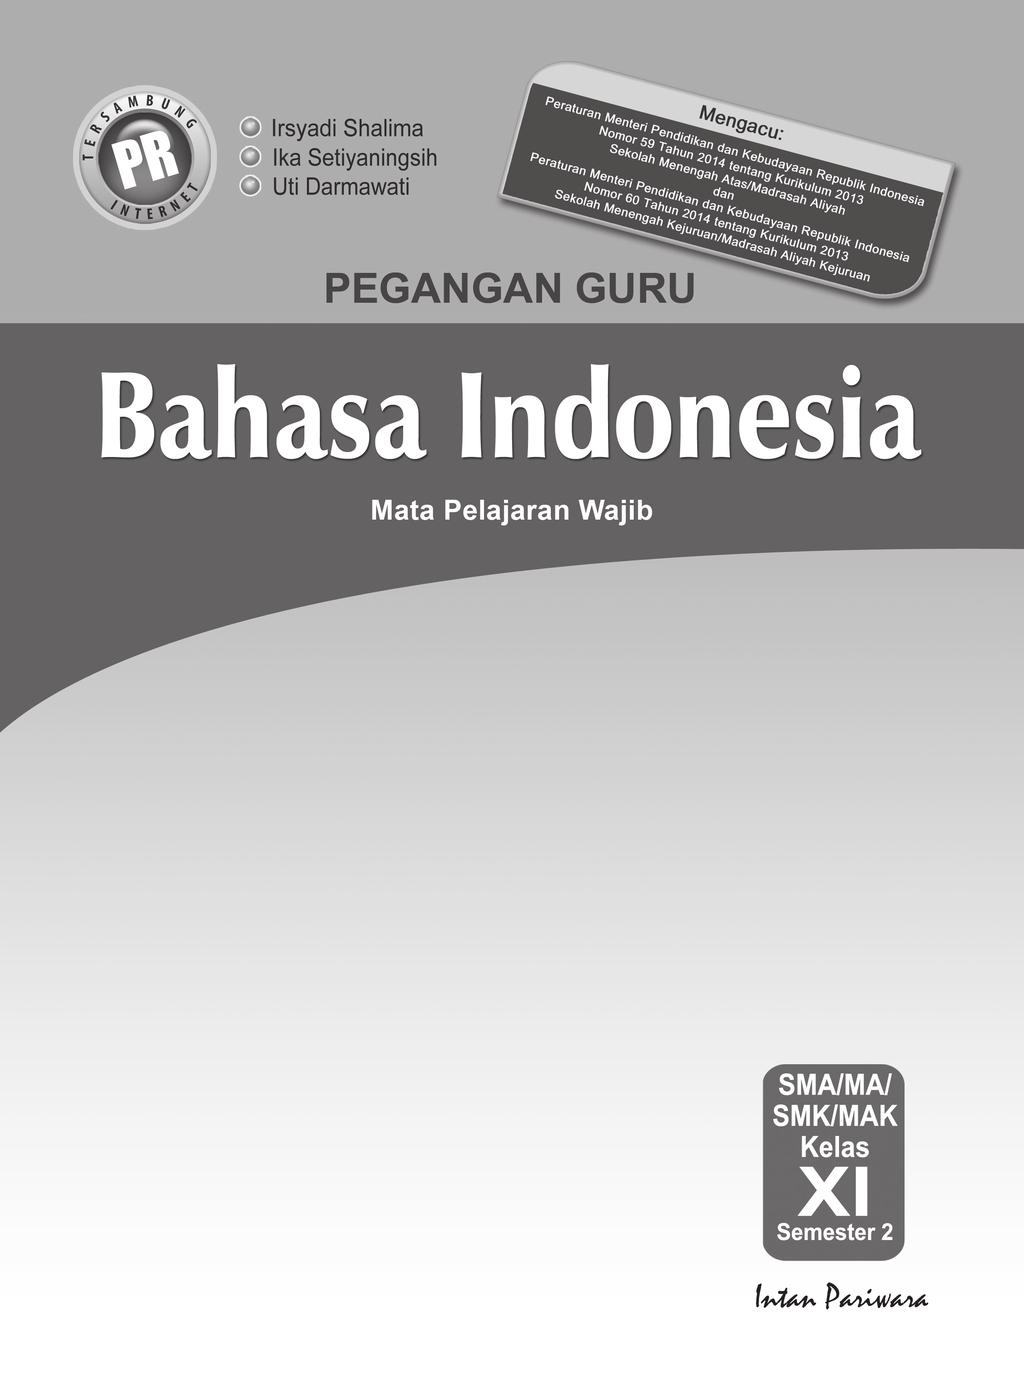 Kunci Jawaban Dan Pembahasan Bahasa Indonesia Kelas Xi Semester 2 Pdf Free Download